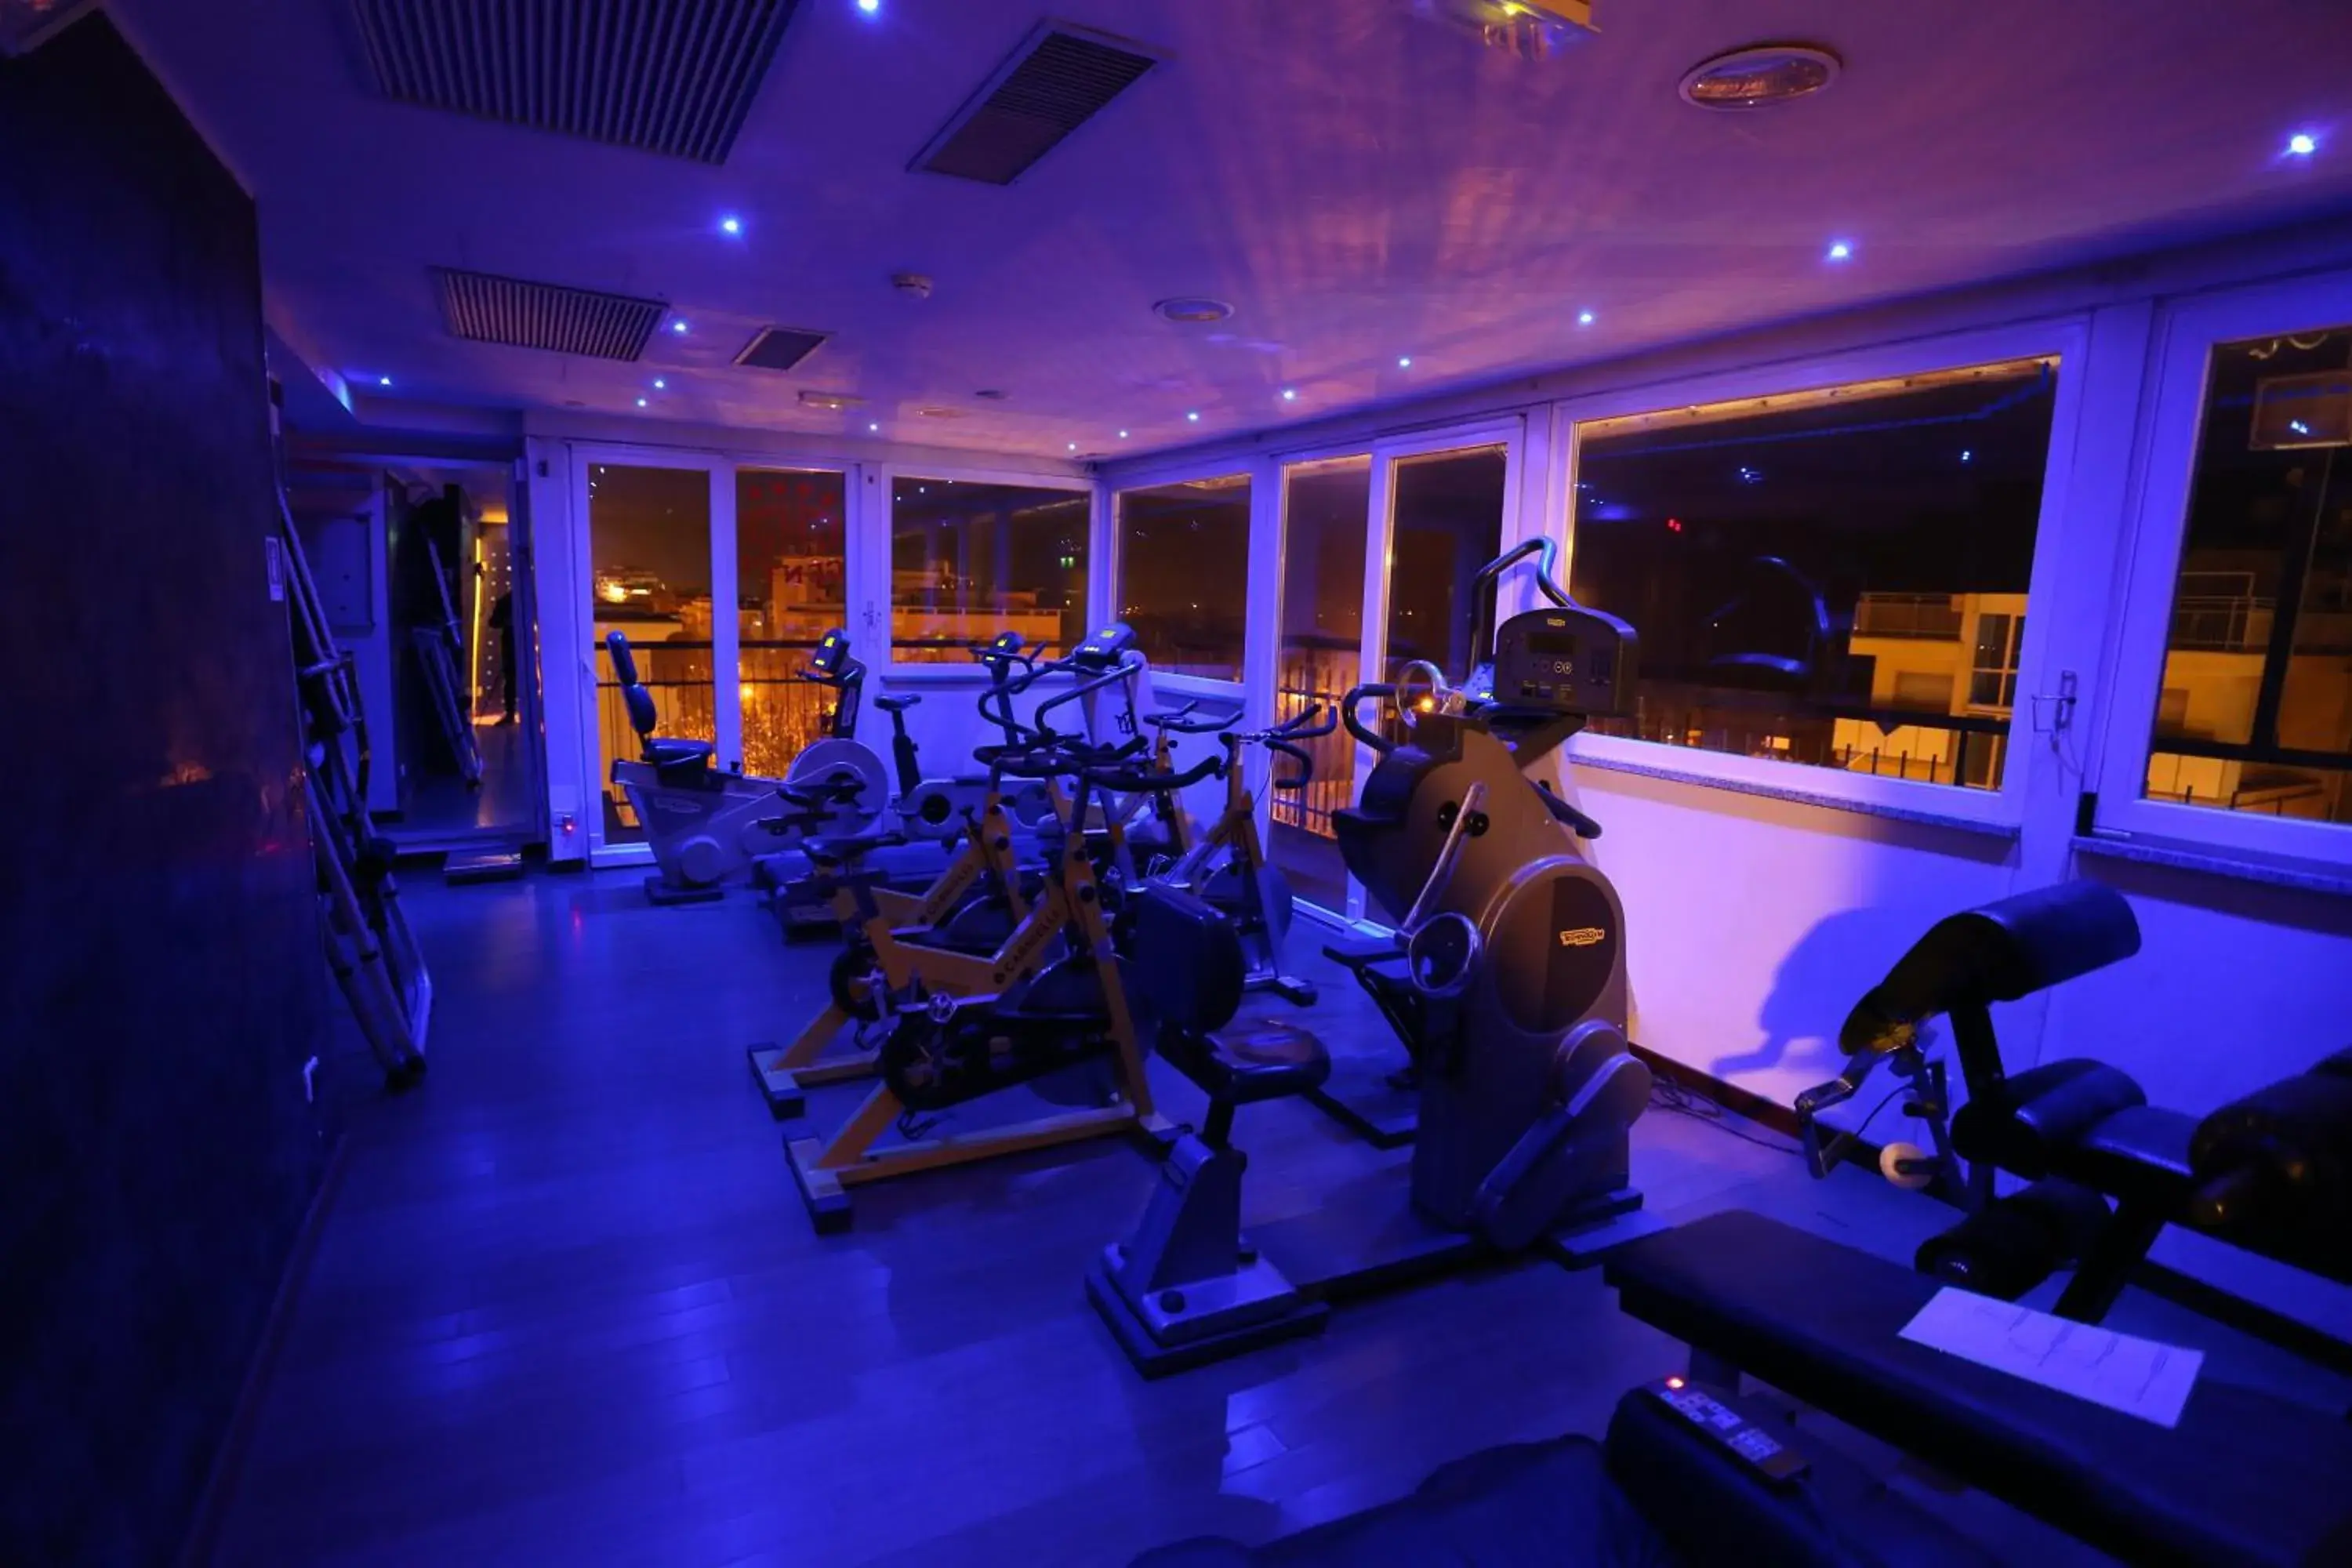 Night, Fitness Center/Facilities in Hotel Genty